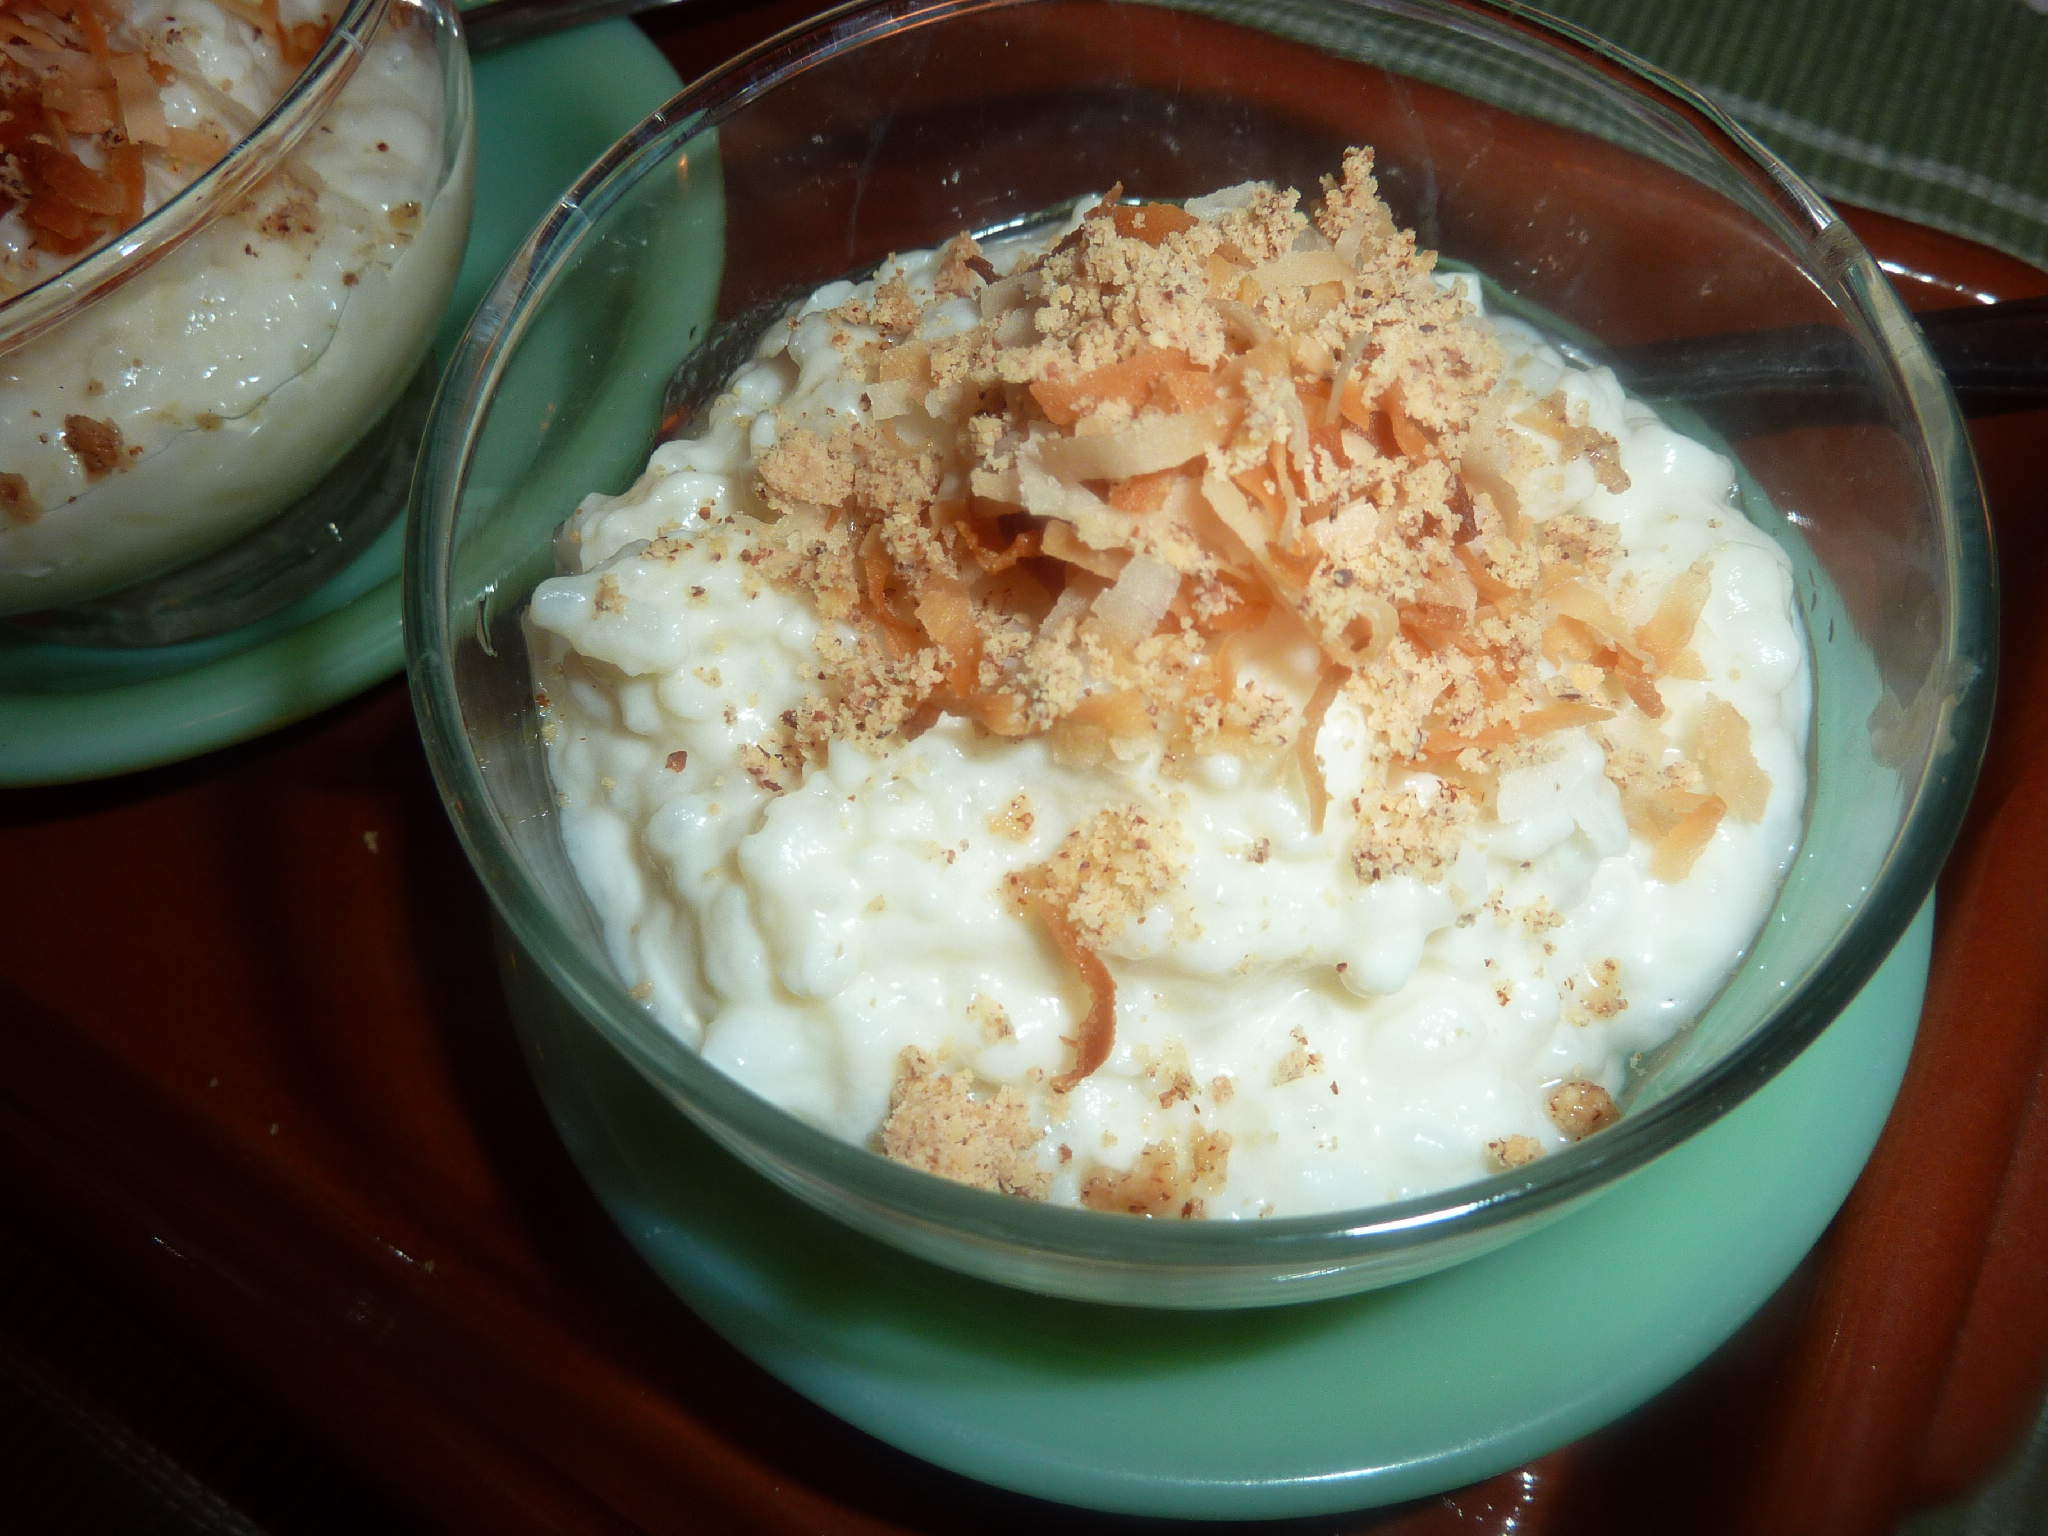 coconut rice pudding dessert recipe milk satisfy craving comfort sagmart cooked skim heat